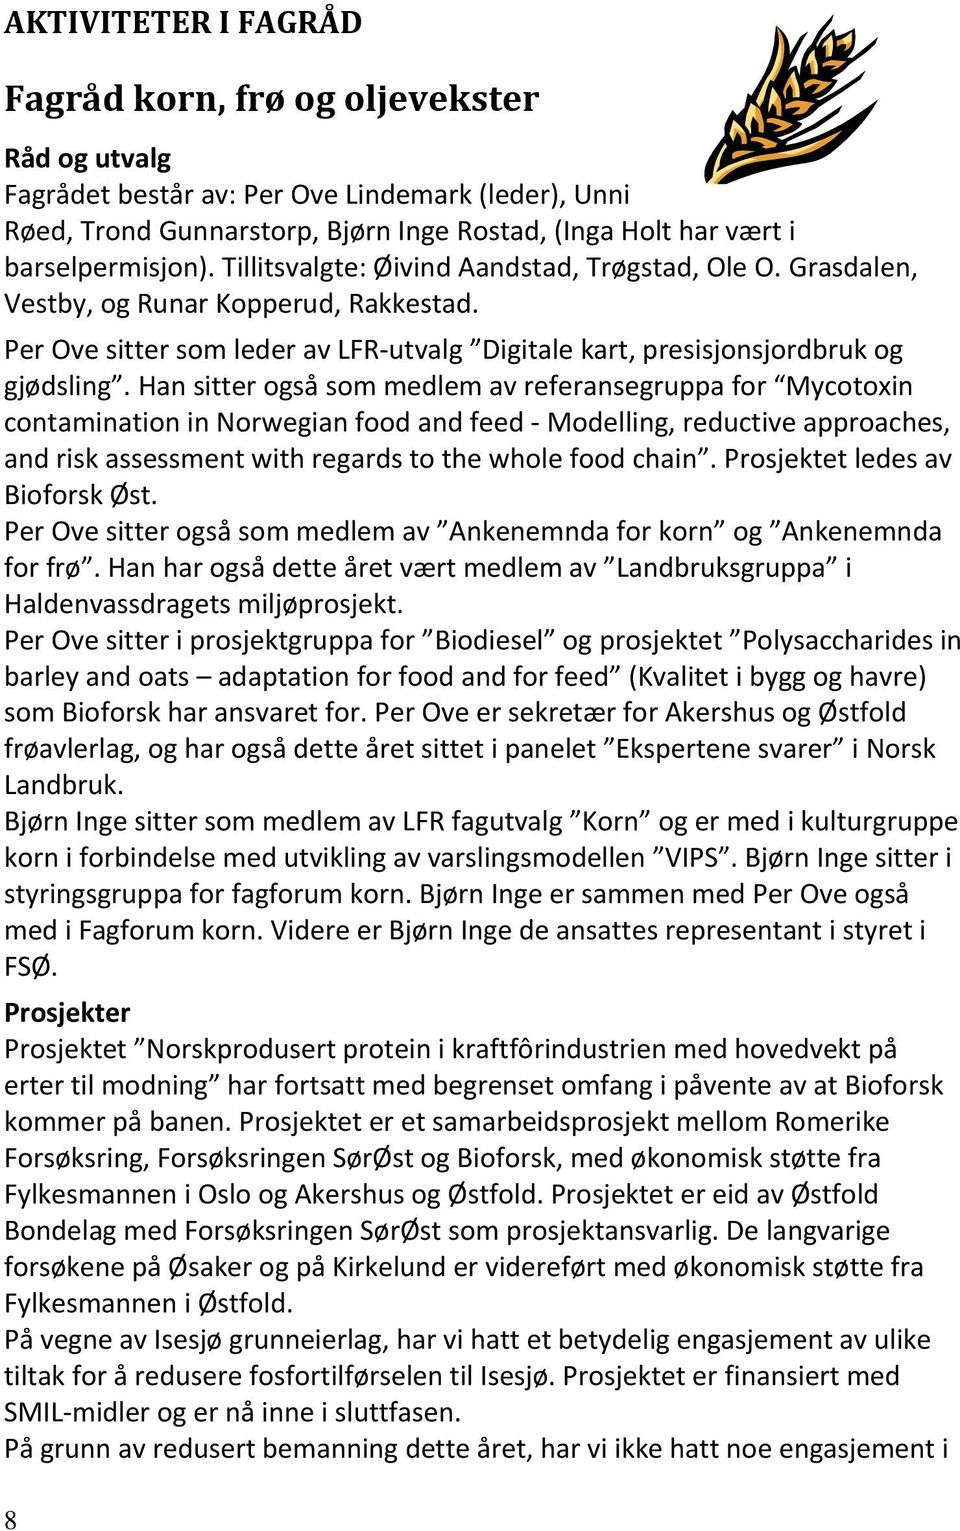 Per Ove sitter som leder av LFR-utvalg Digitale kart, presisjonsjordbruk og gjødsling.